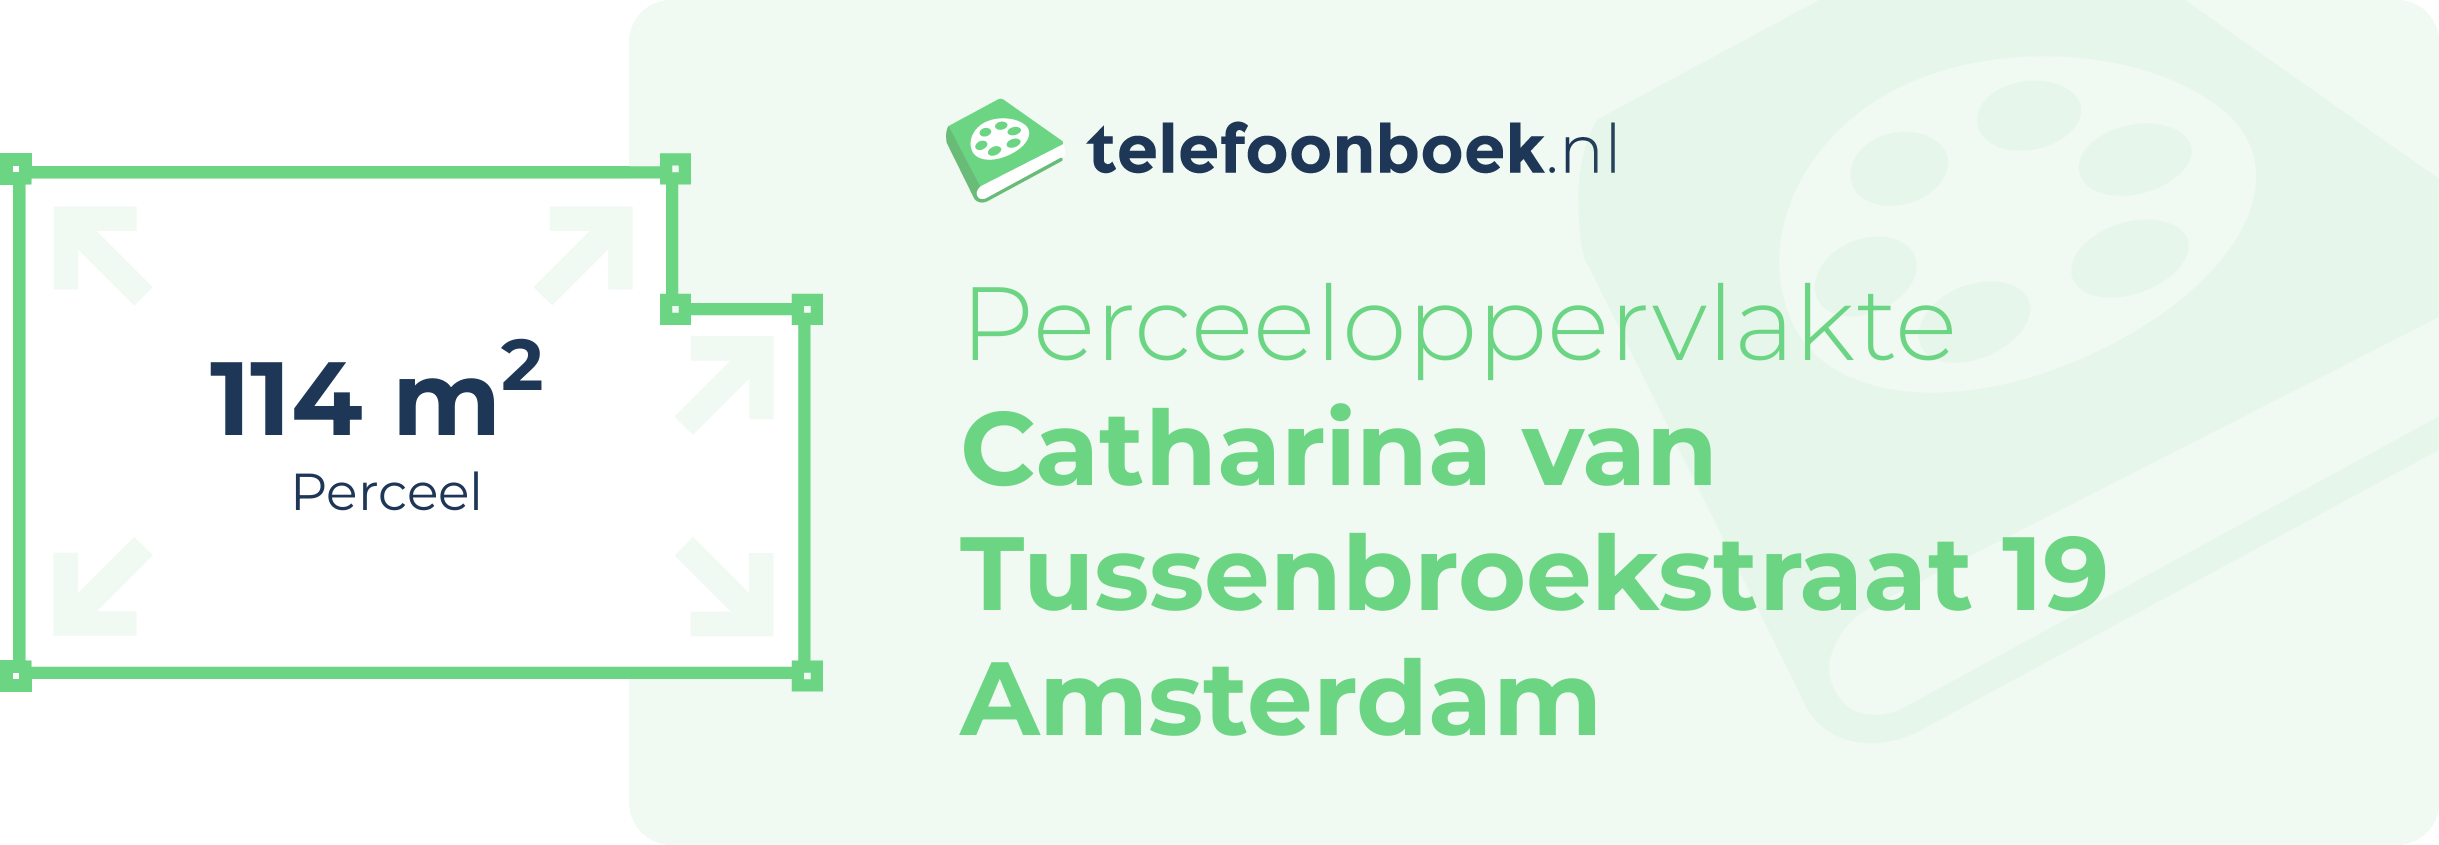 Perceeloppervlakte Catharina Van Tussenbroekstraat 19 Amsterdam